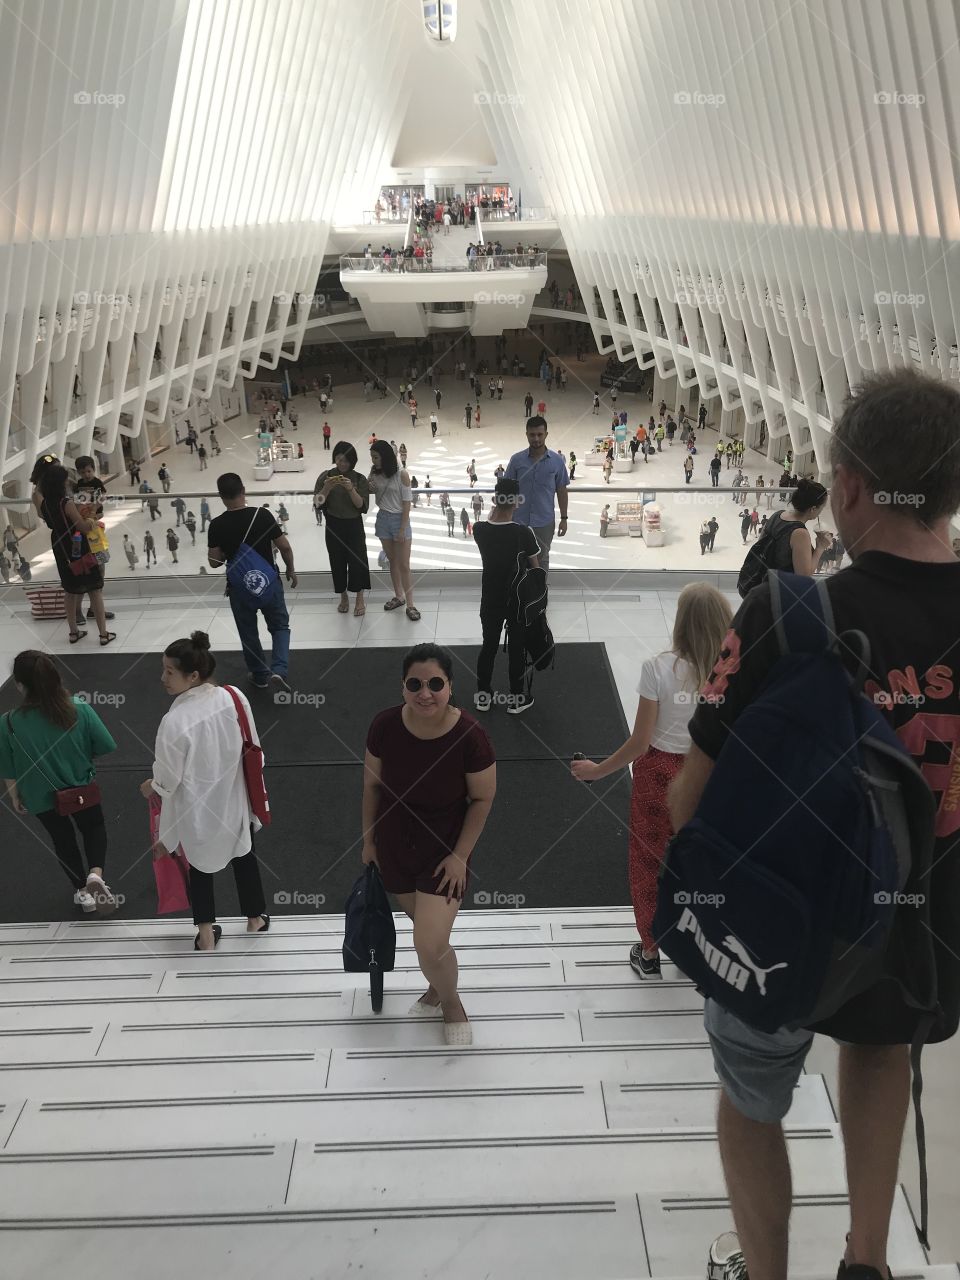 The Oculus, WTC